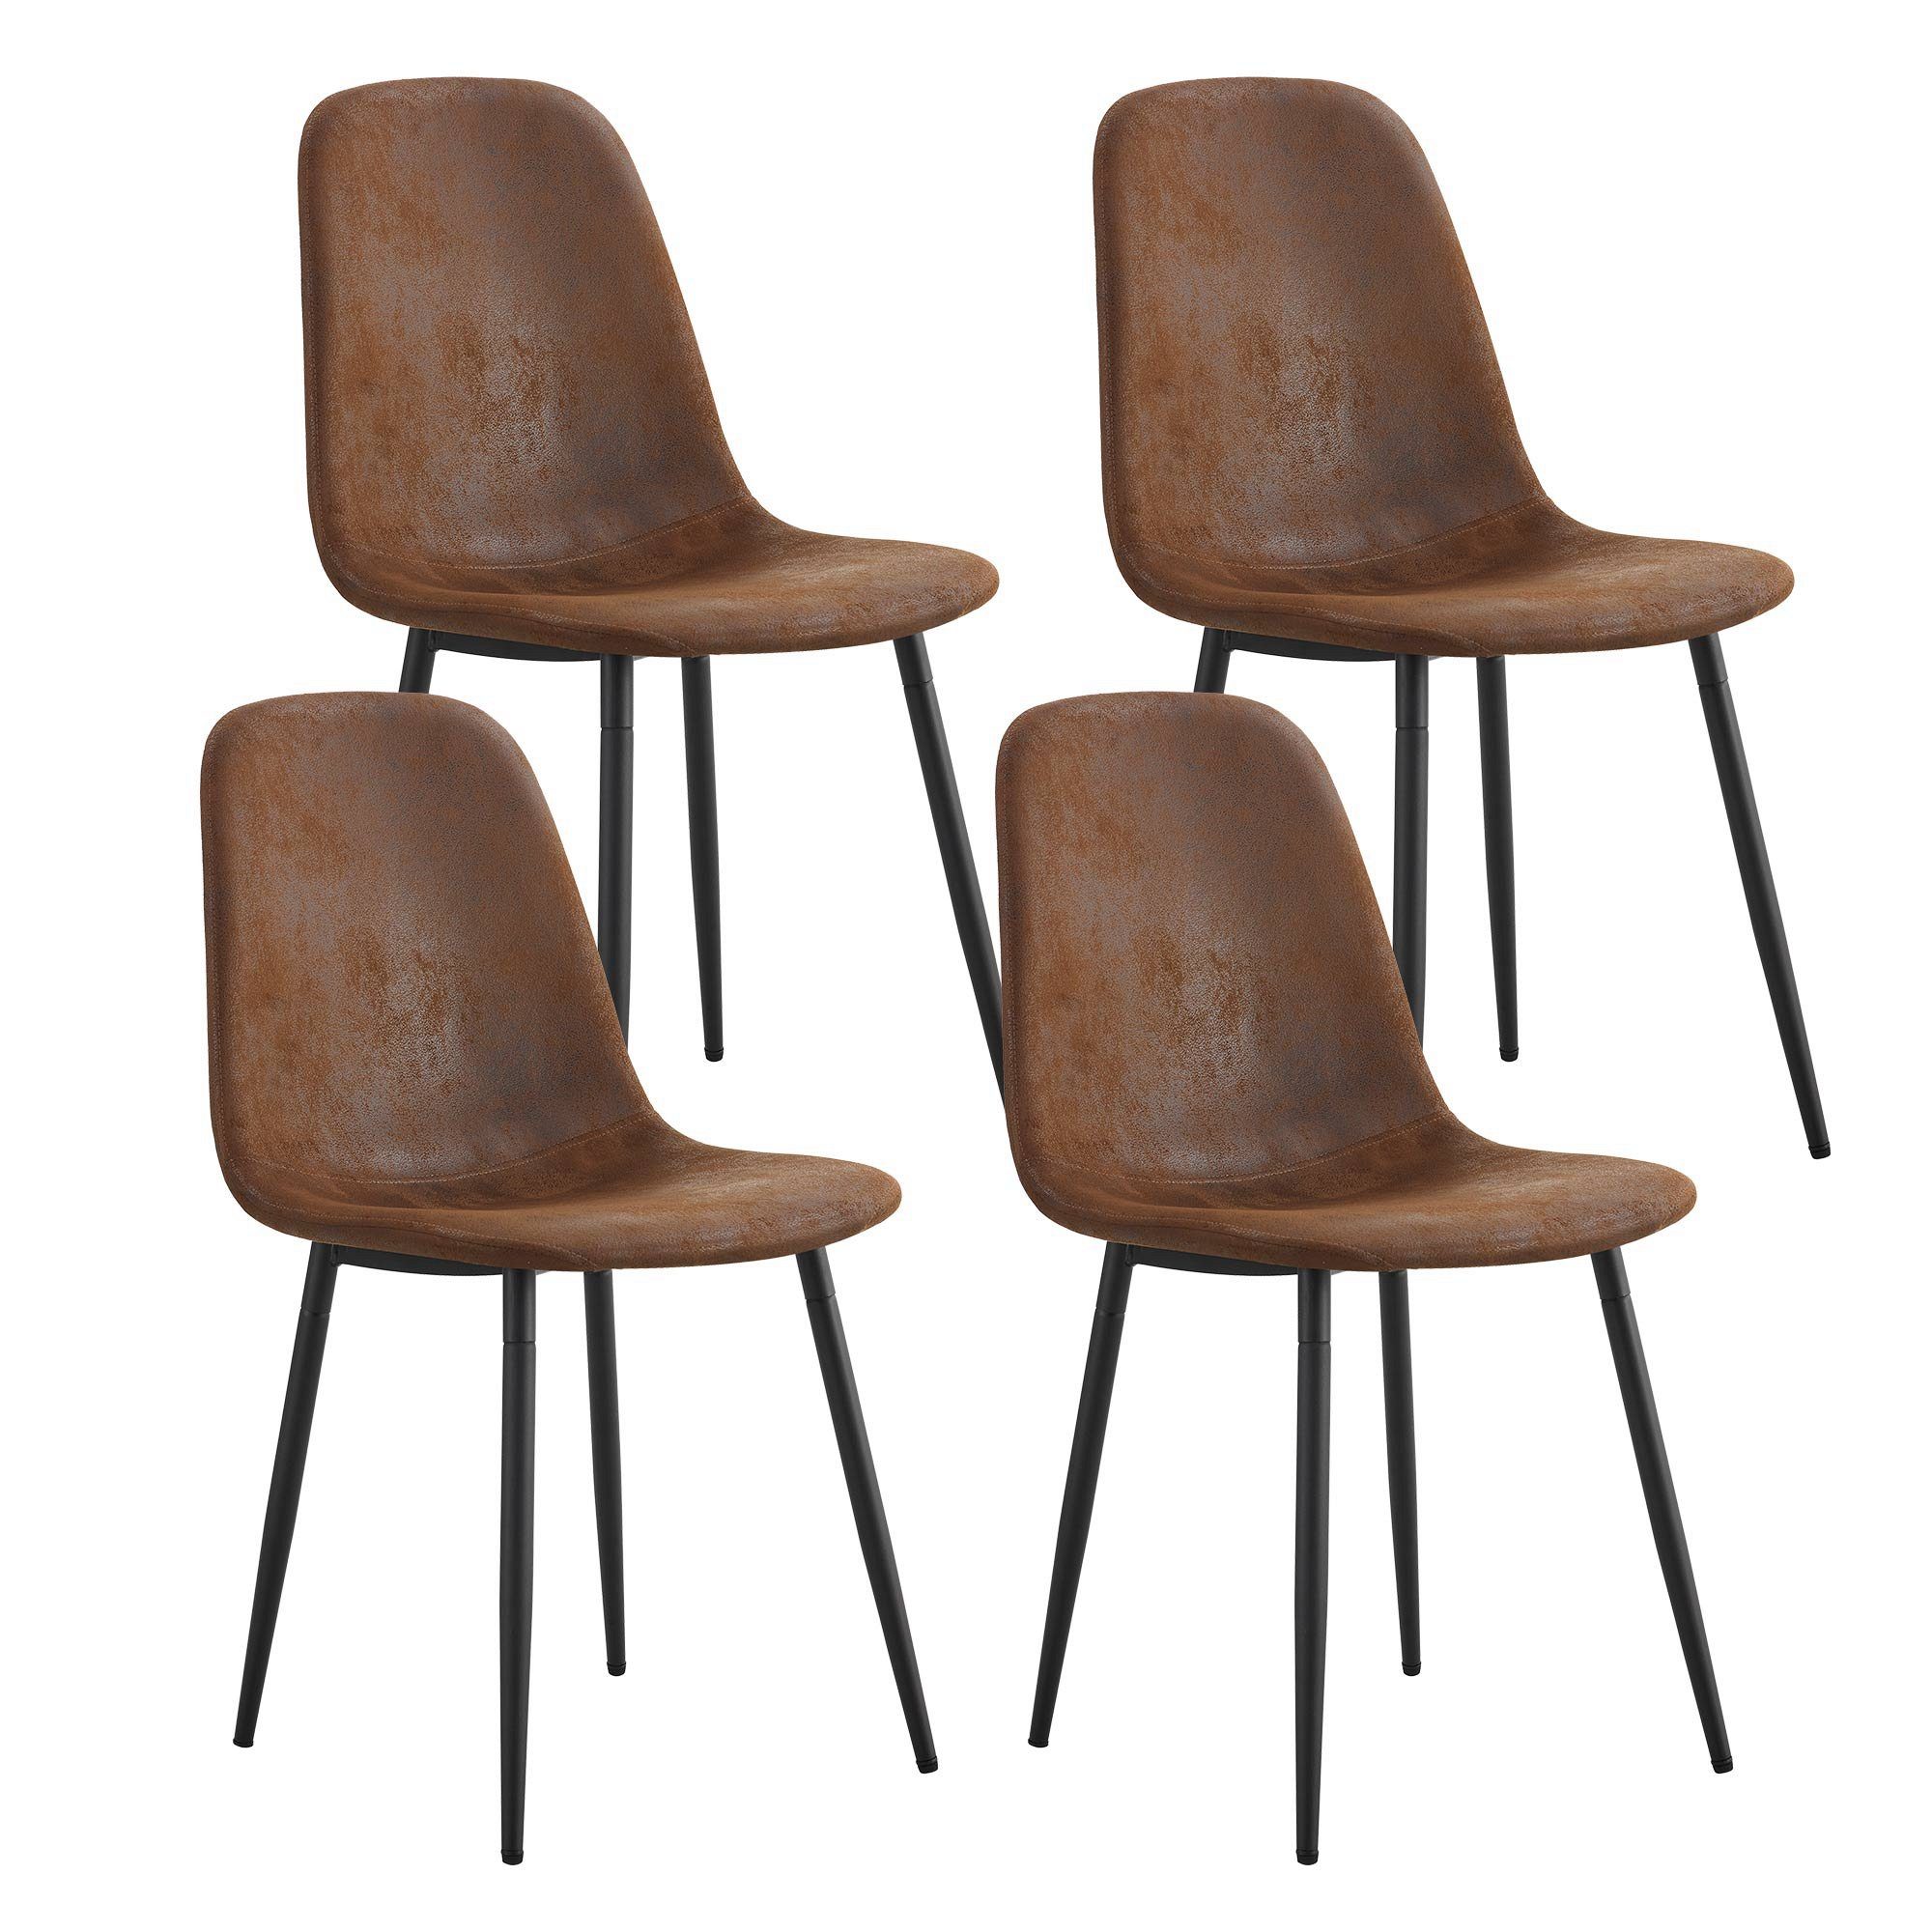 Esszimmerstuhl Set Celya 4er Leinen braun Stühle, Sitze, gepolsterte Metallbeine